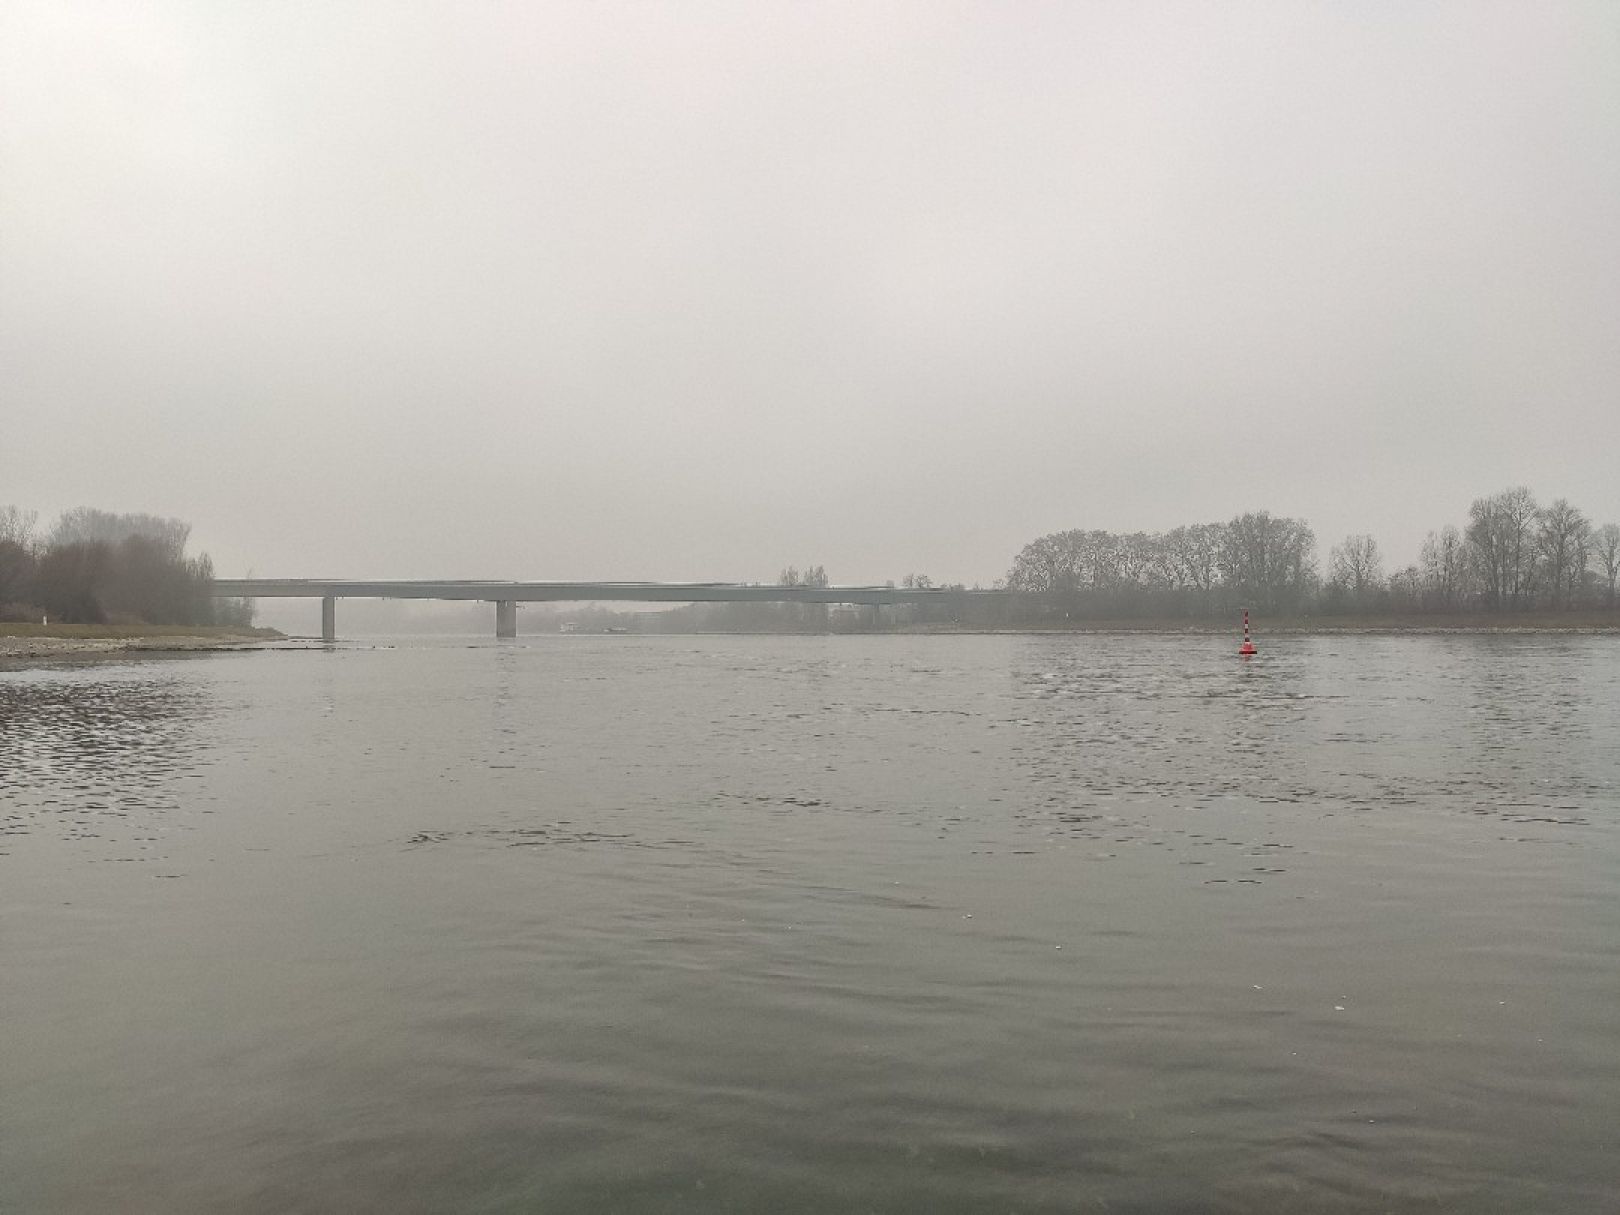 Rhein (Germersheim) angeln